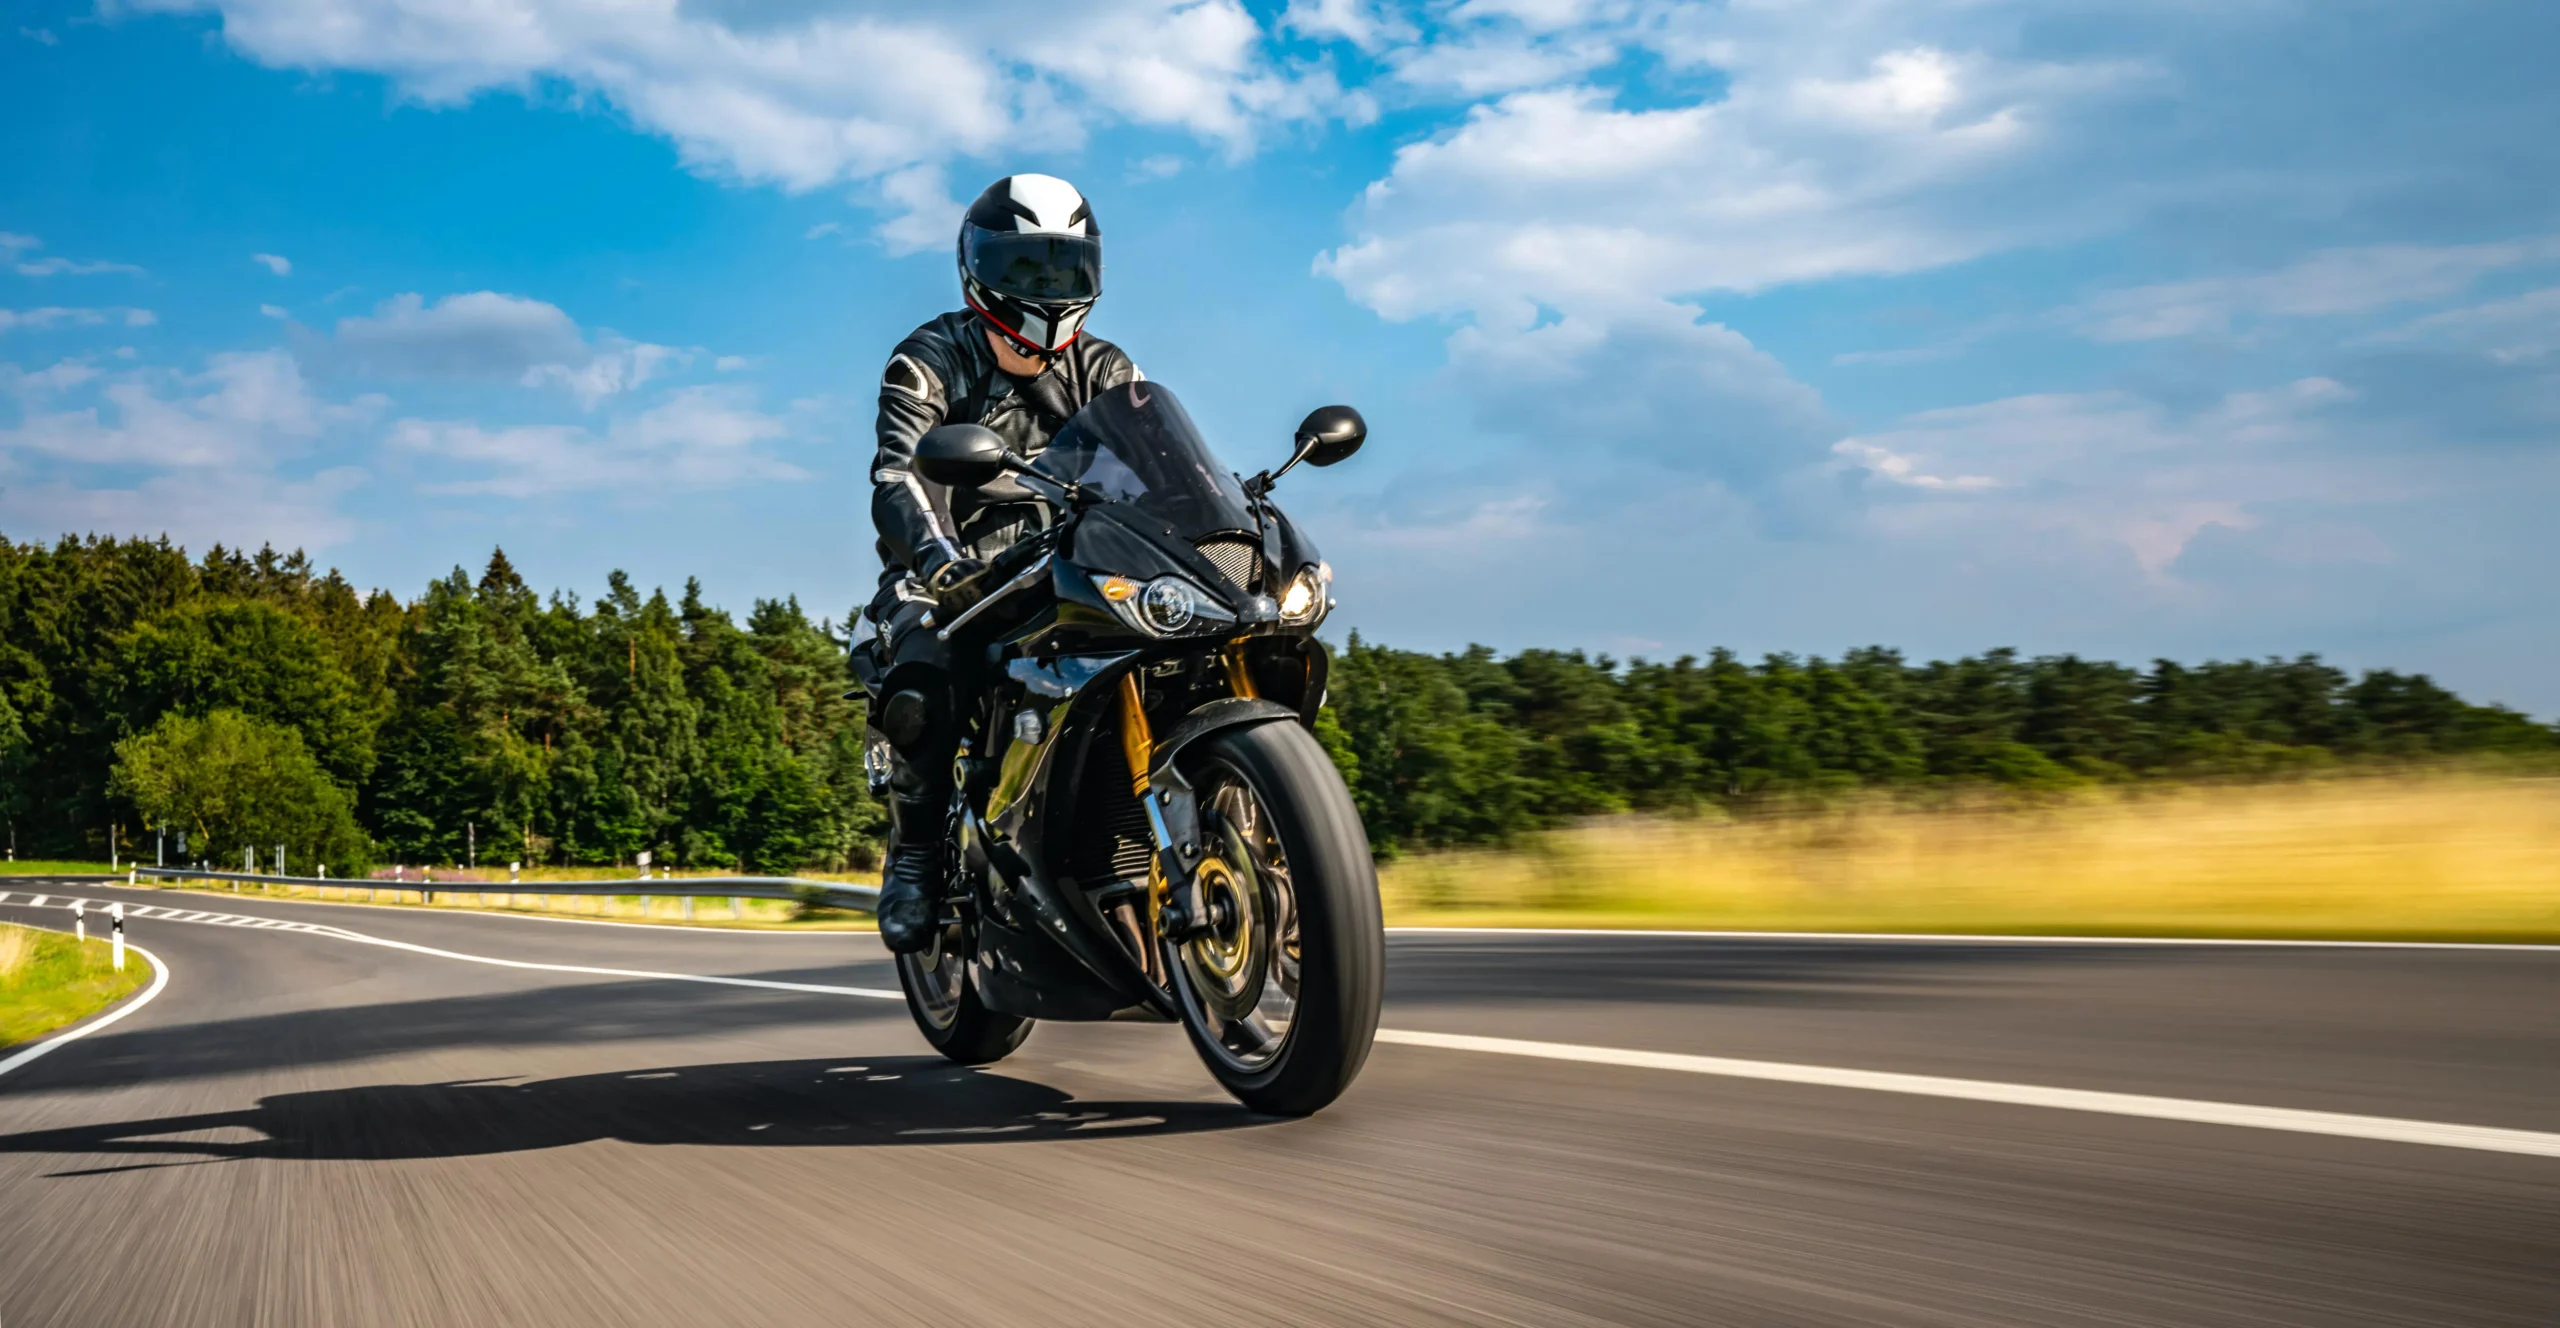 velocidad maxima para una motocicleta en autopista - Cuál es la velocidad máxima permitida de las motocicletas con sidecar en autovía